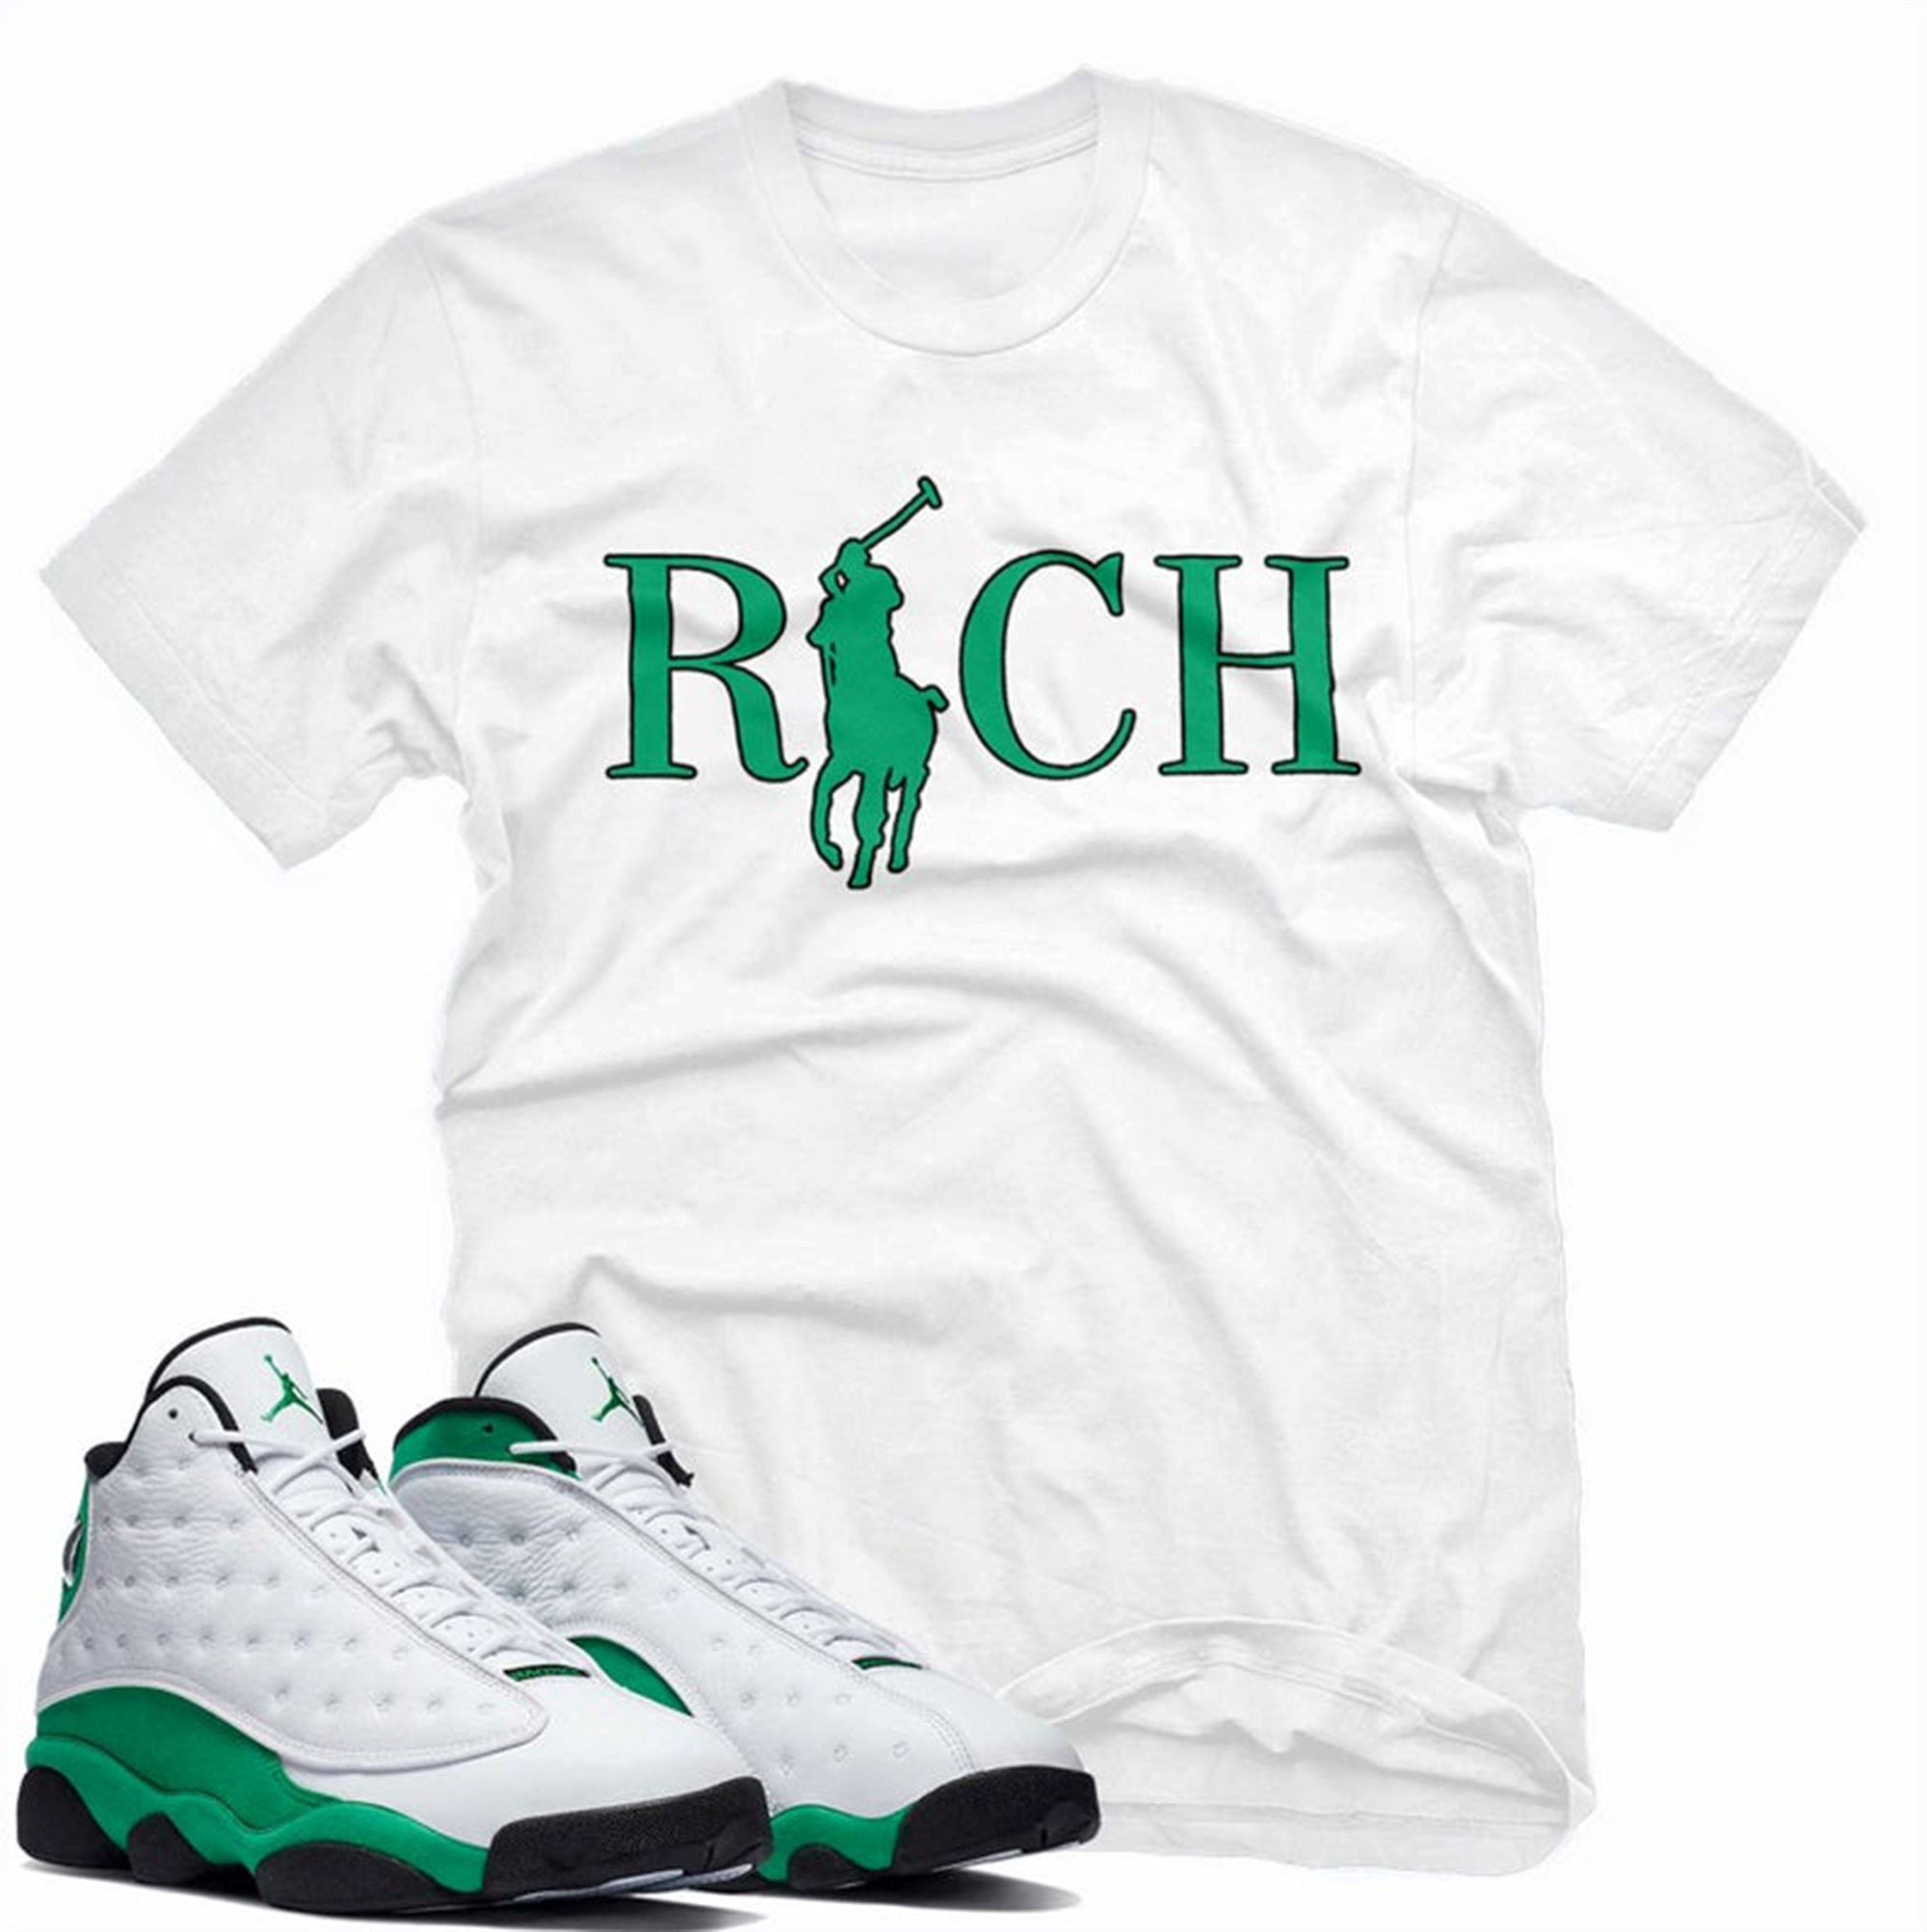 Limited Editon Jordan 13 Lucky Green Shirt Rich Unisex Tee Shirt To Match Air Jordan 13 Retro Lucky Green 13 Lucky Green Sneakers T Shirt For Sneakerhead 